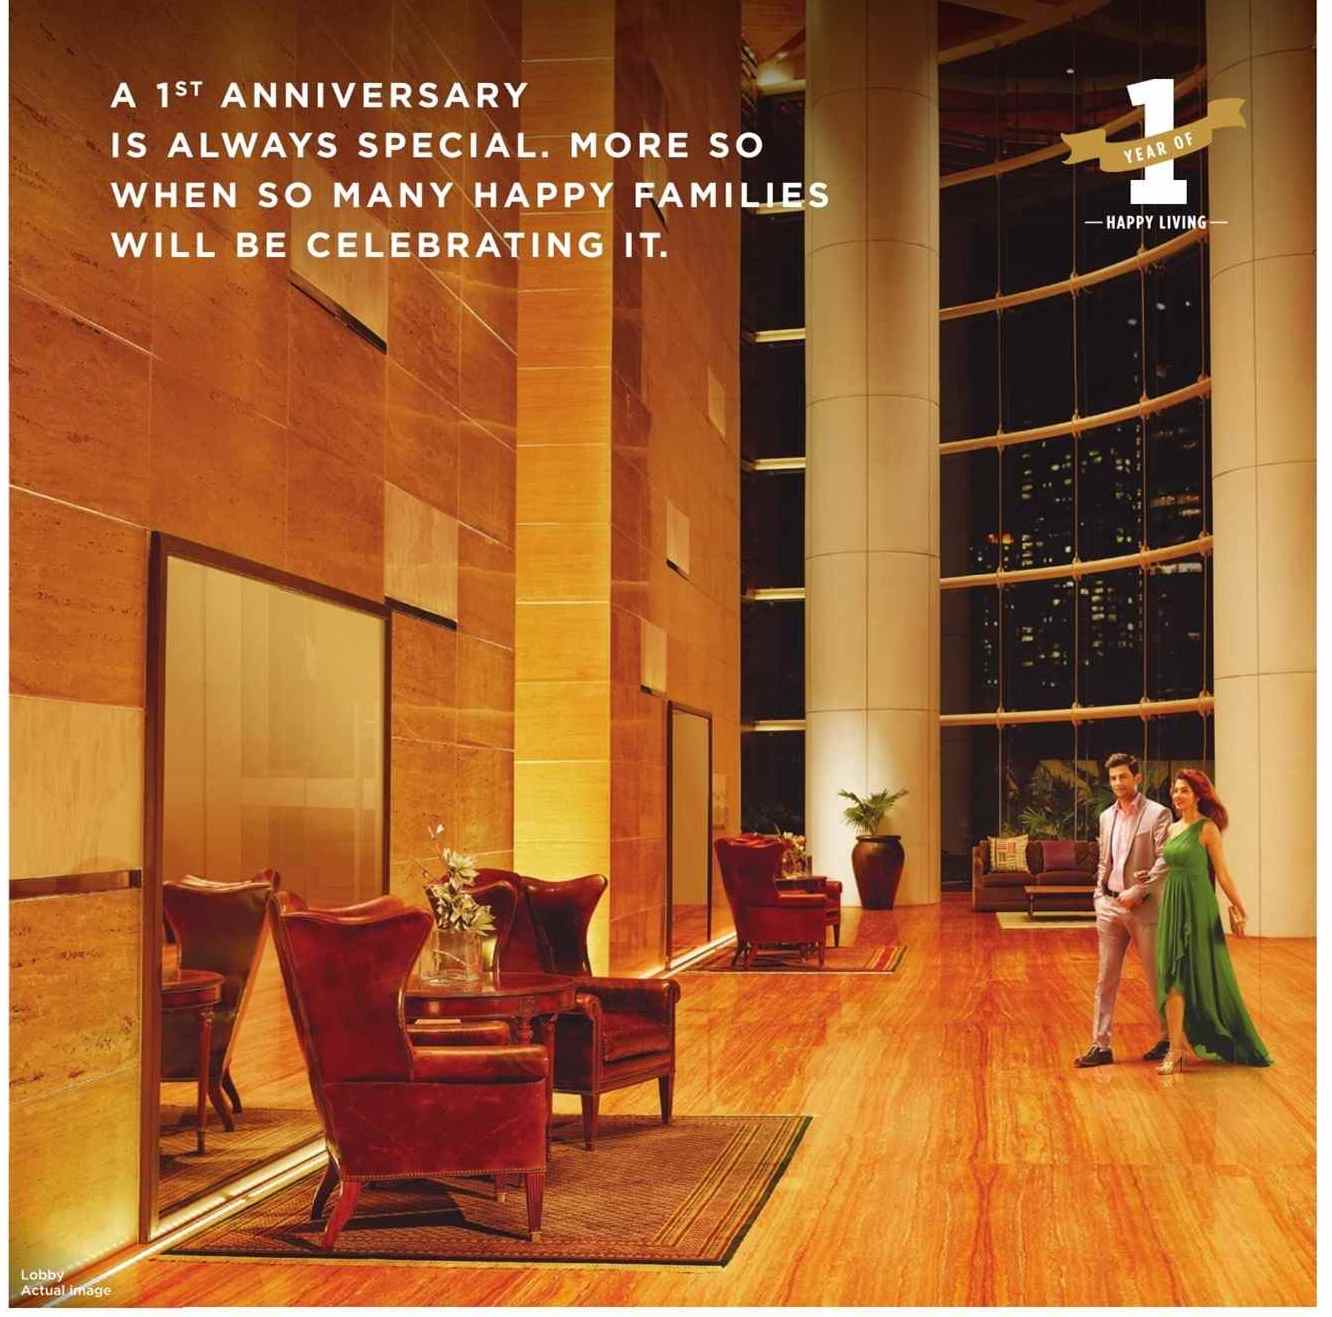 Indiabulls Sky celebrating its 1st anniversary, Mumbai Update